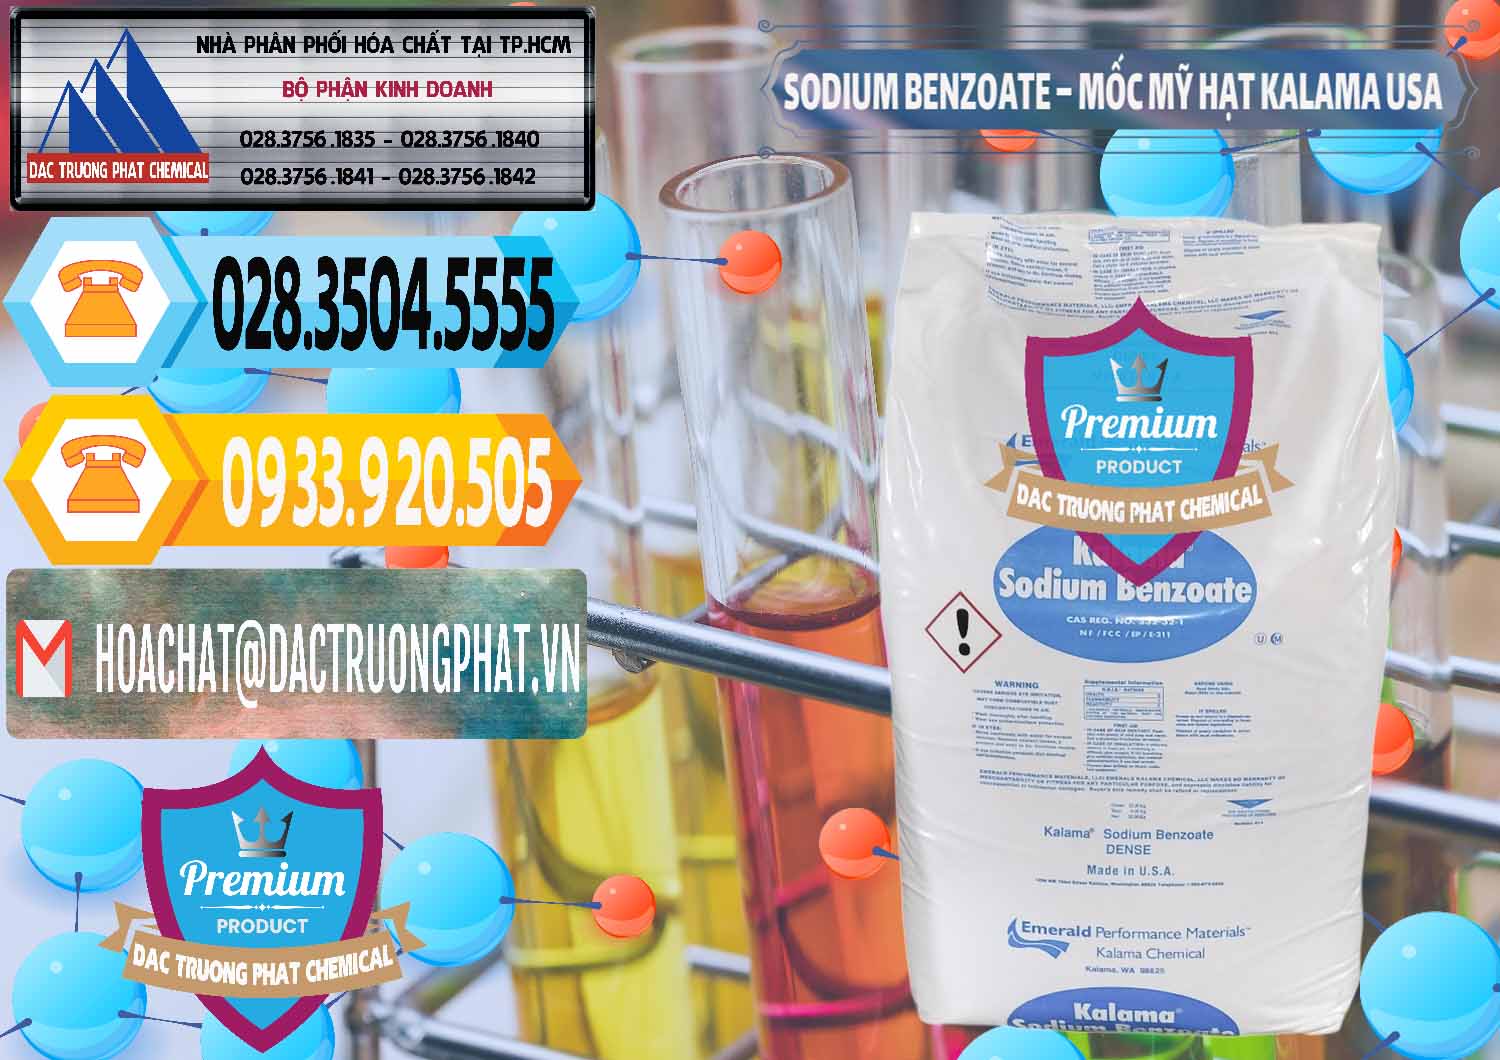 Công ty bán - cung cấp Sodium Benzoate - Mốc Hạt Kalama Food Grade Mỹ Usa - 0137 - Nhà cung cấp và phân phối hóa chất tại TP.HCM - hoachattayrua.net